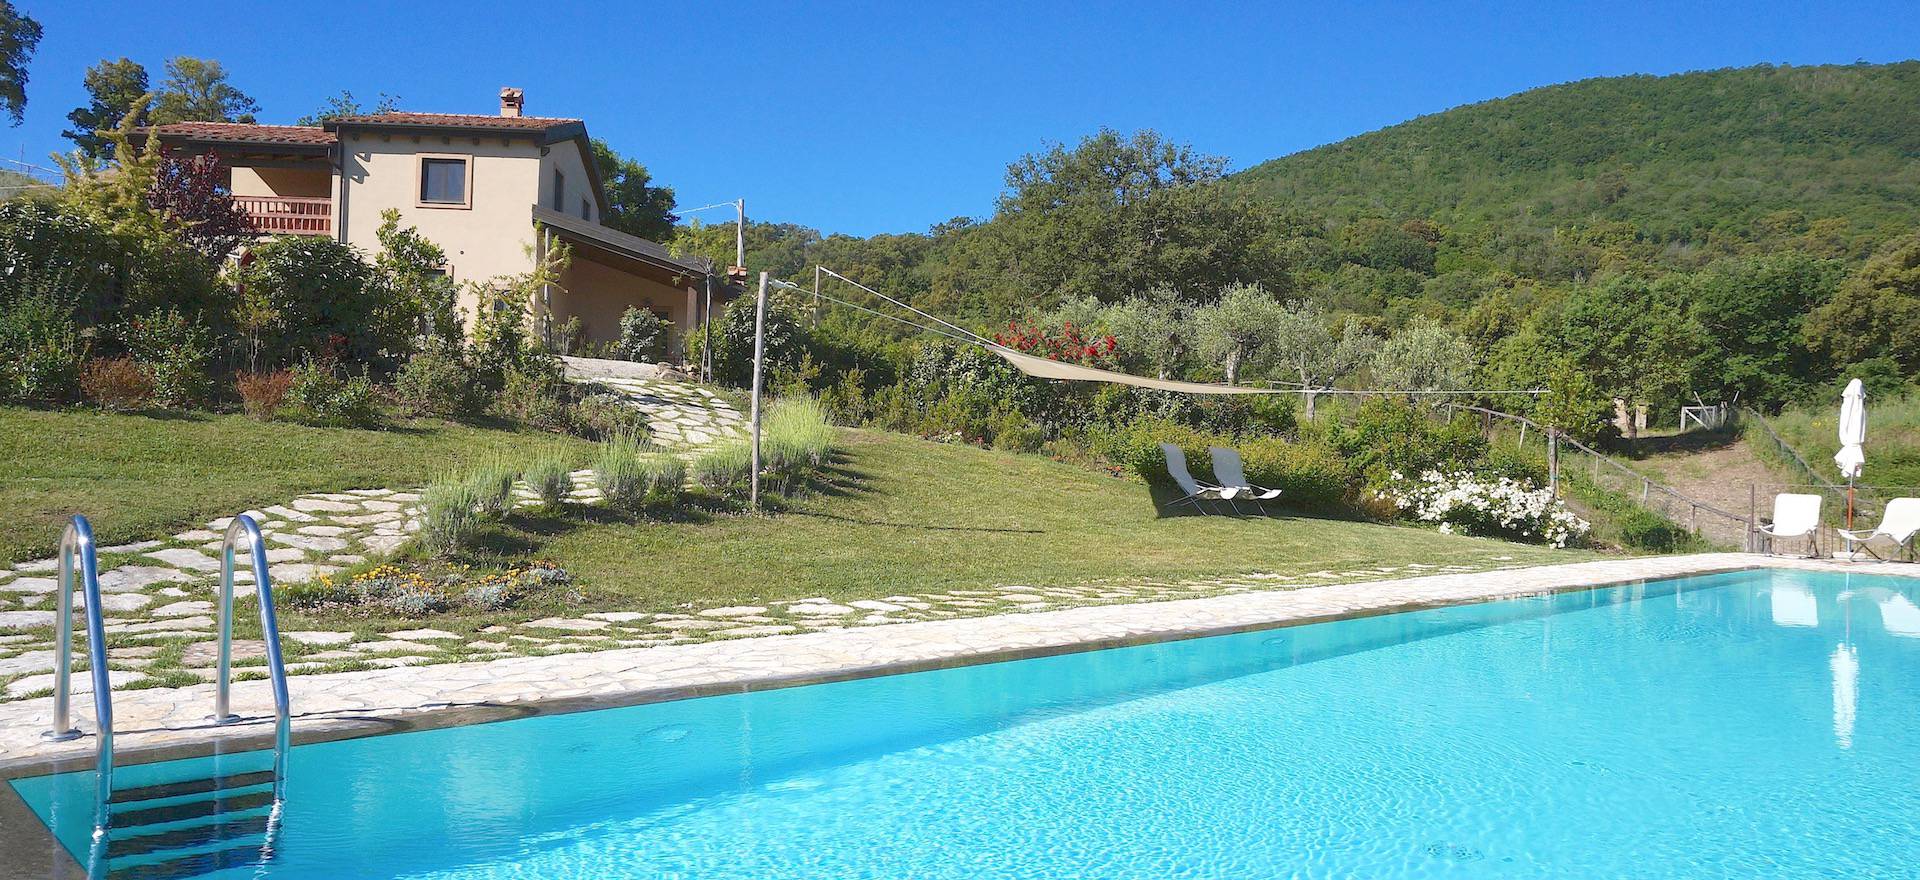 Agriturismo met luxe huizen op een heuvel in Toscane